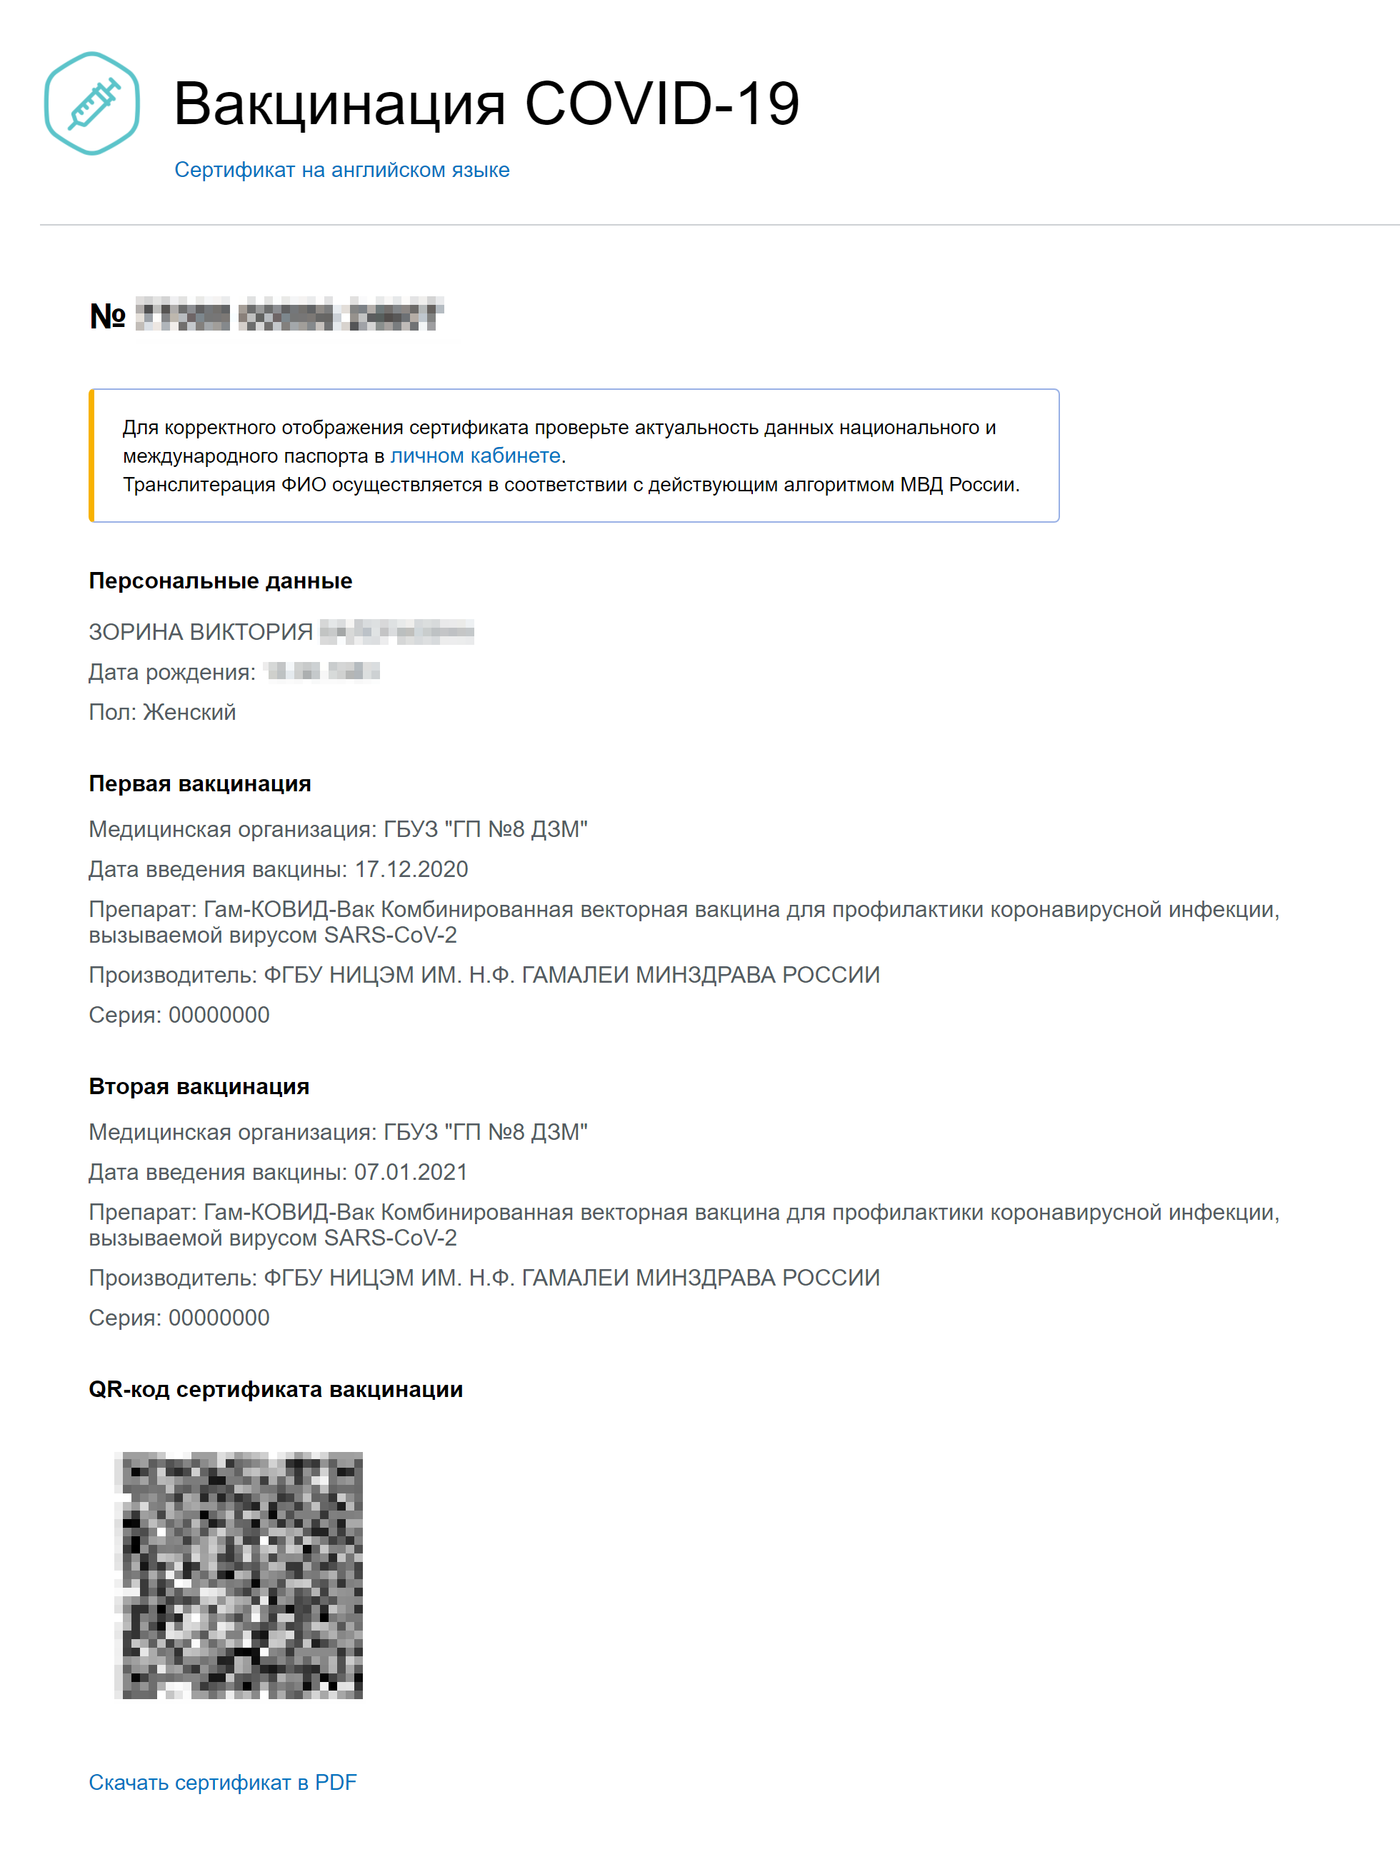 Сертификат о вакцинации от коронавируса на госуслугах как посмотреть в госуслугах